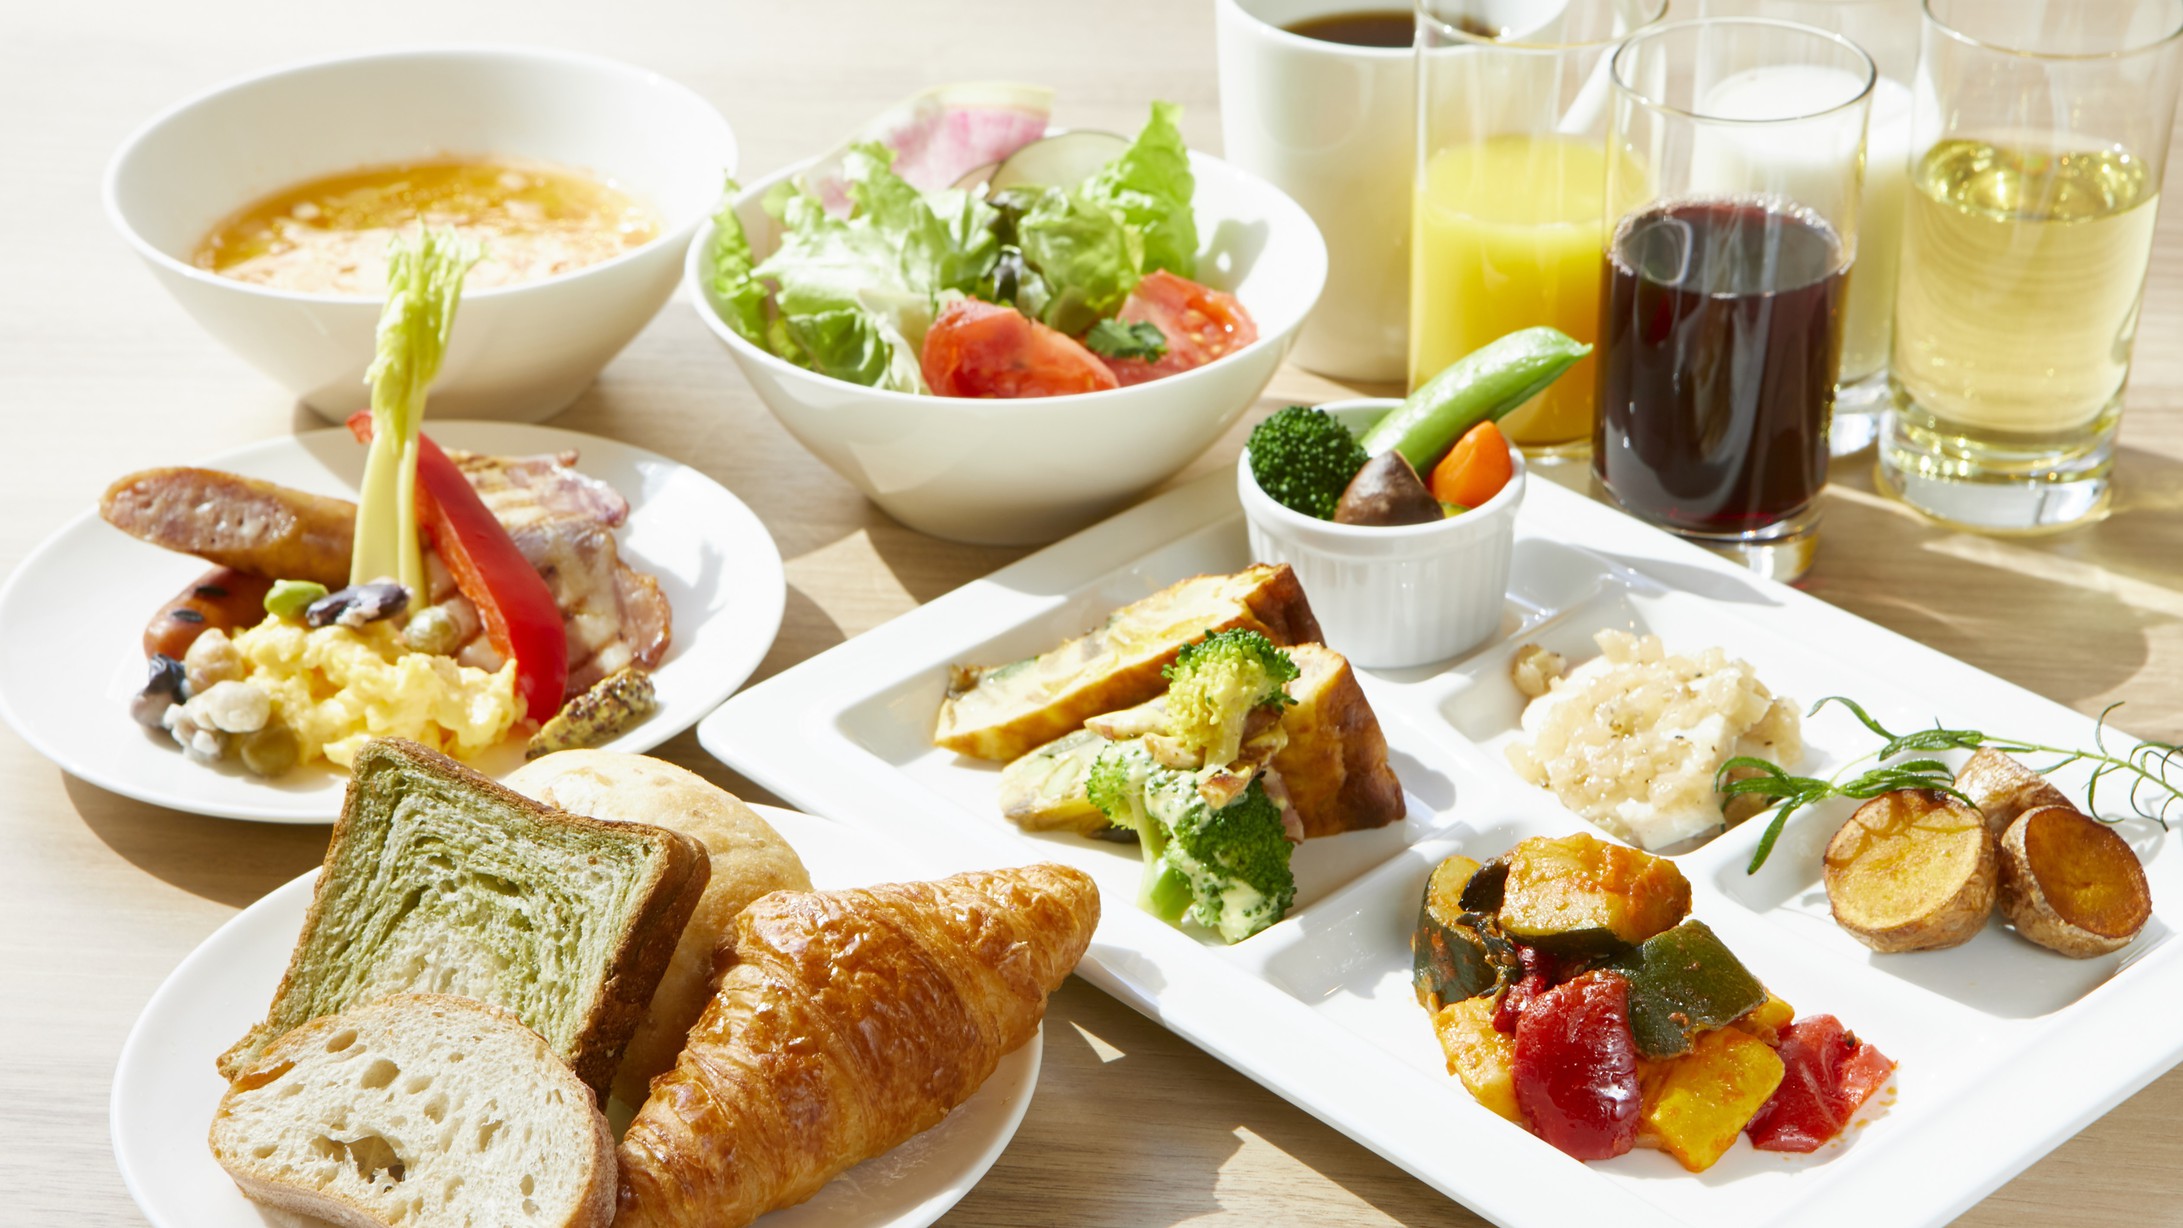 【朝食 | 焼きたてパンとごちそう野菜の朝ごはん】